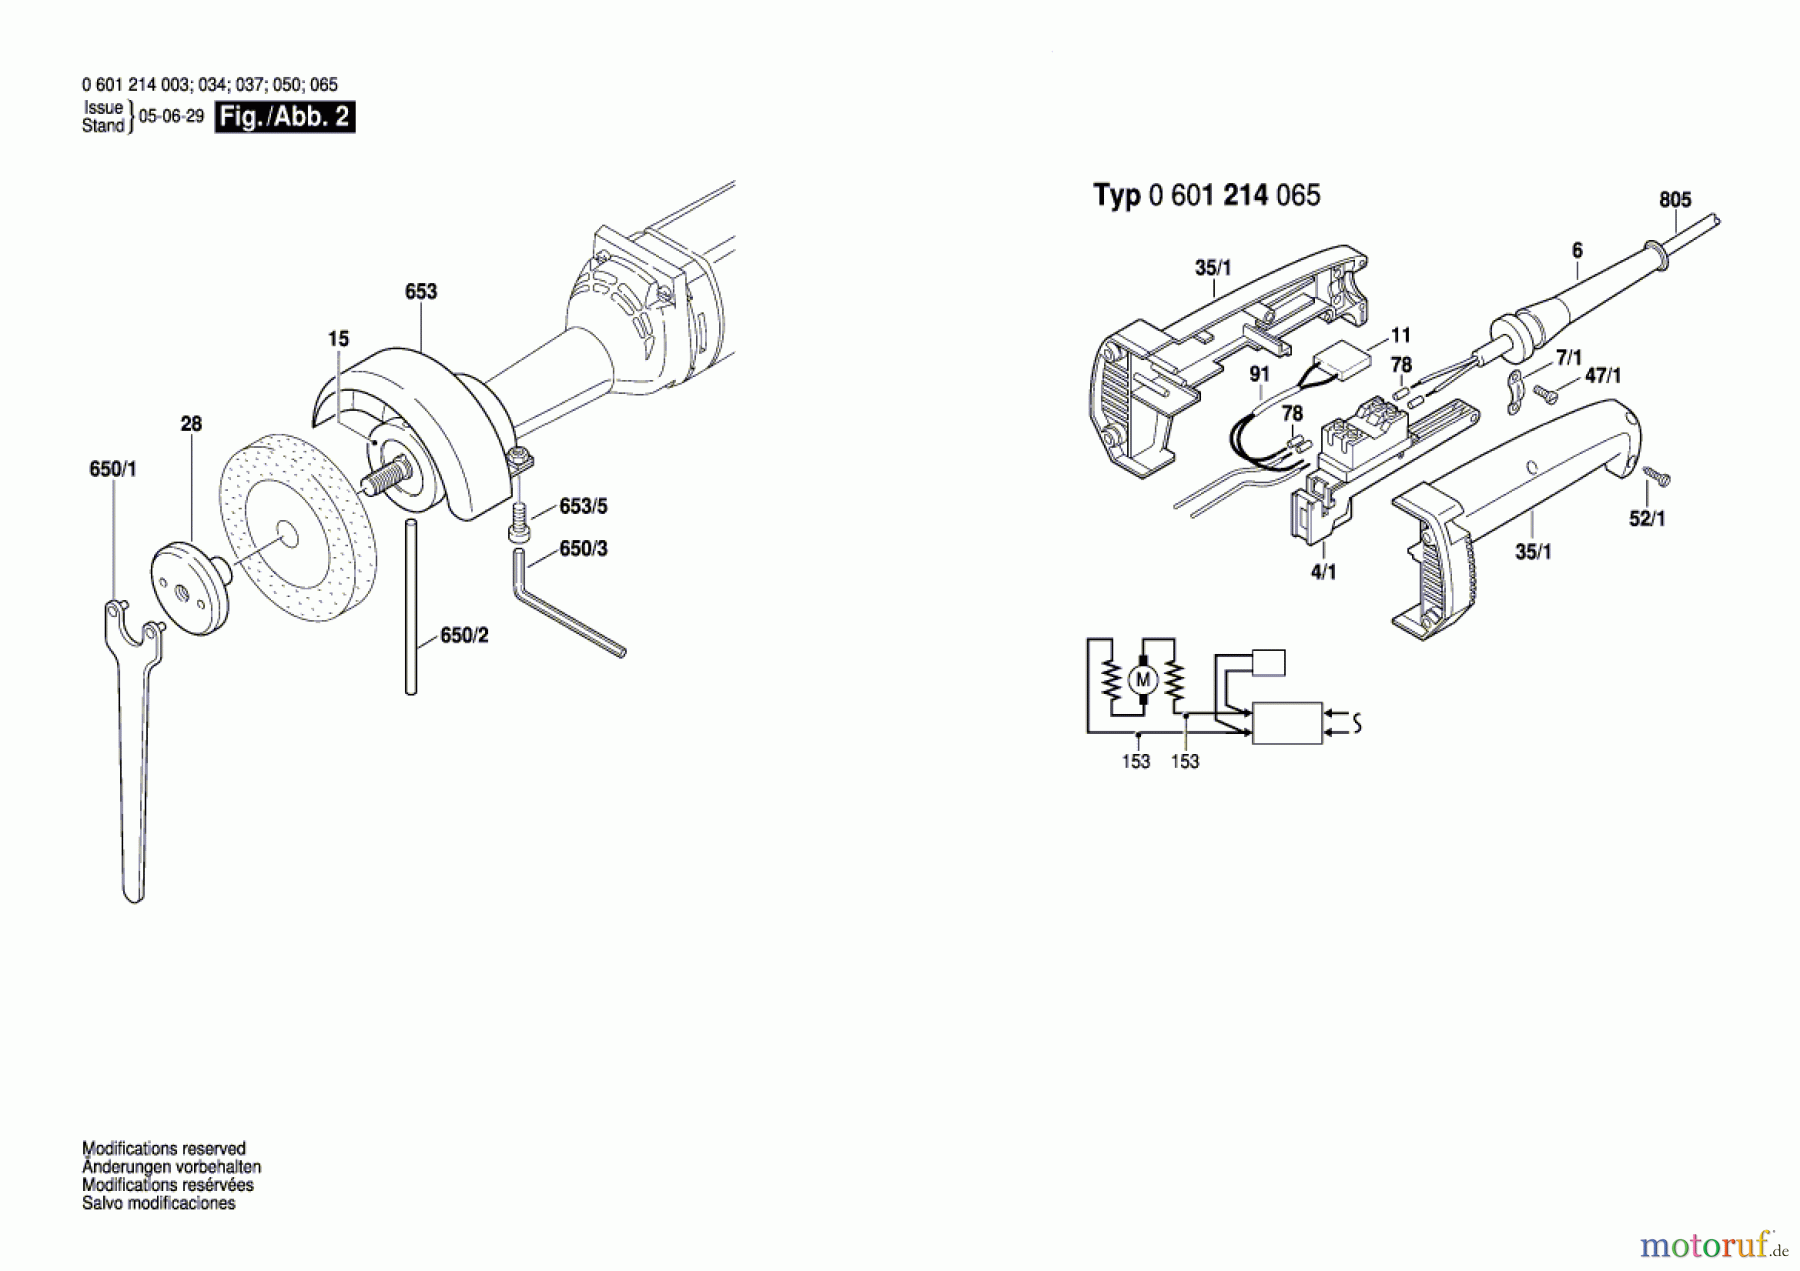  Bosch Werkzeug Geradschleifer GGS 6 Seite 2